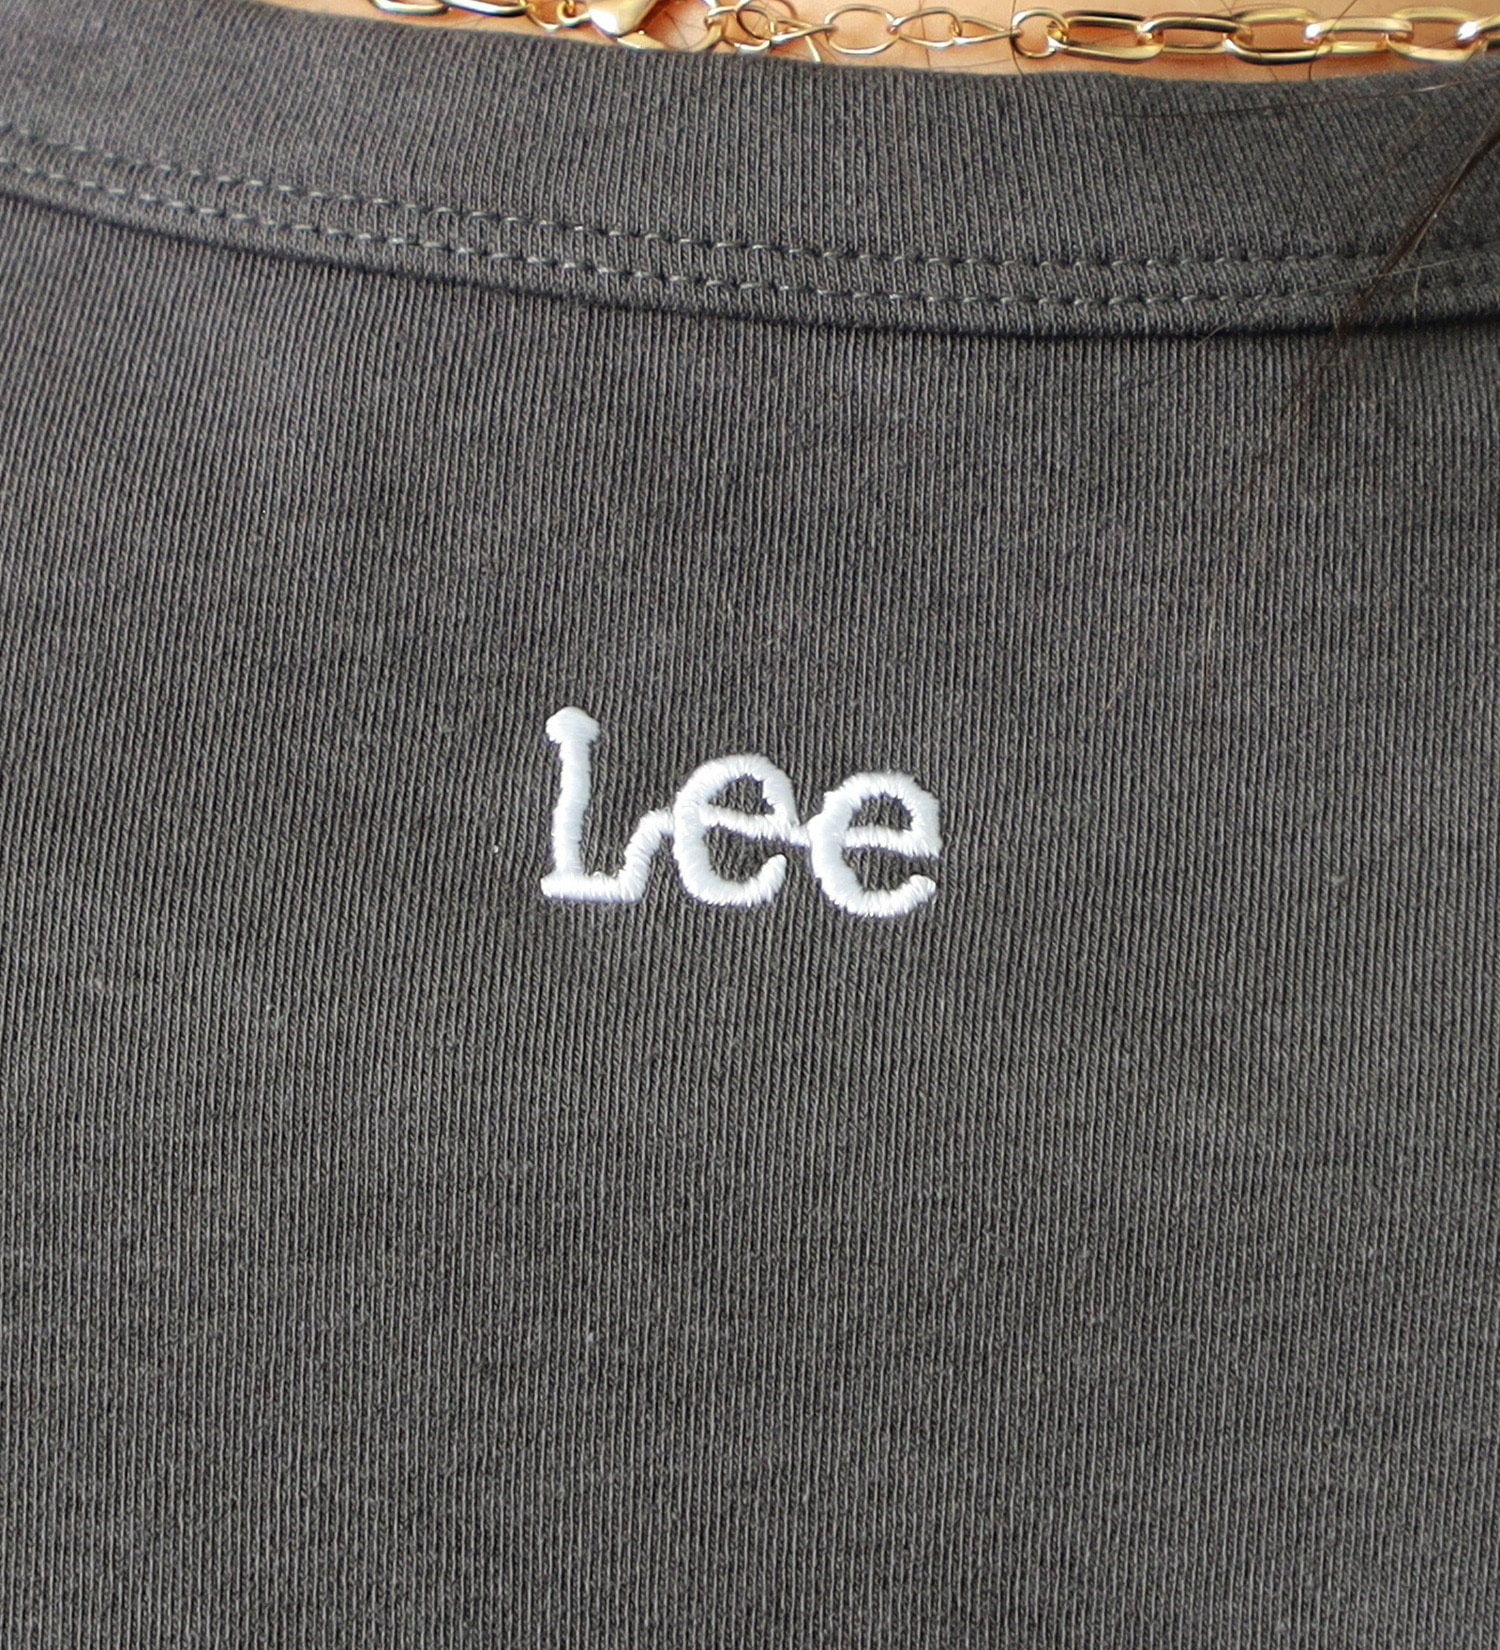 Lee(リー)の【FINAL SALE】コンパクトフィット ショートスリーブTee|トップス/Tシャツ/カットソー/レディース|チャコールグレー